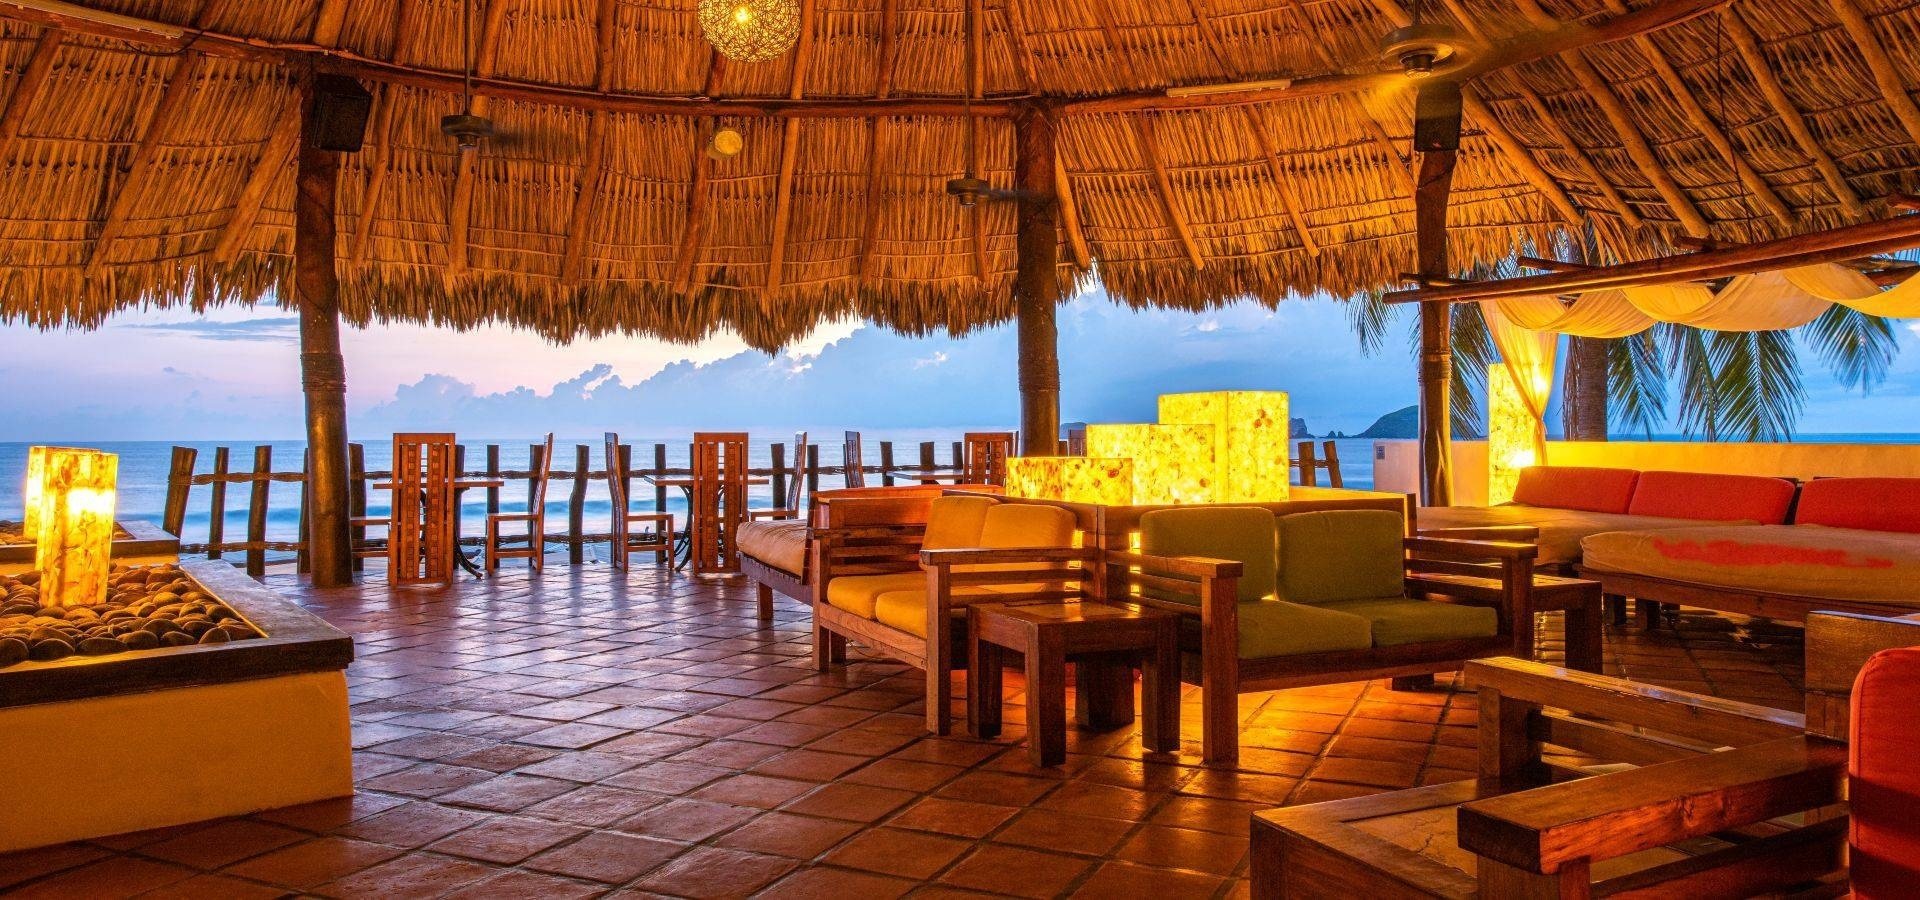 Área com poltronas e cadeiras para relaxar com vista para o mar do Hotel Park Royal Beach Ixtapa